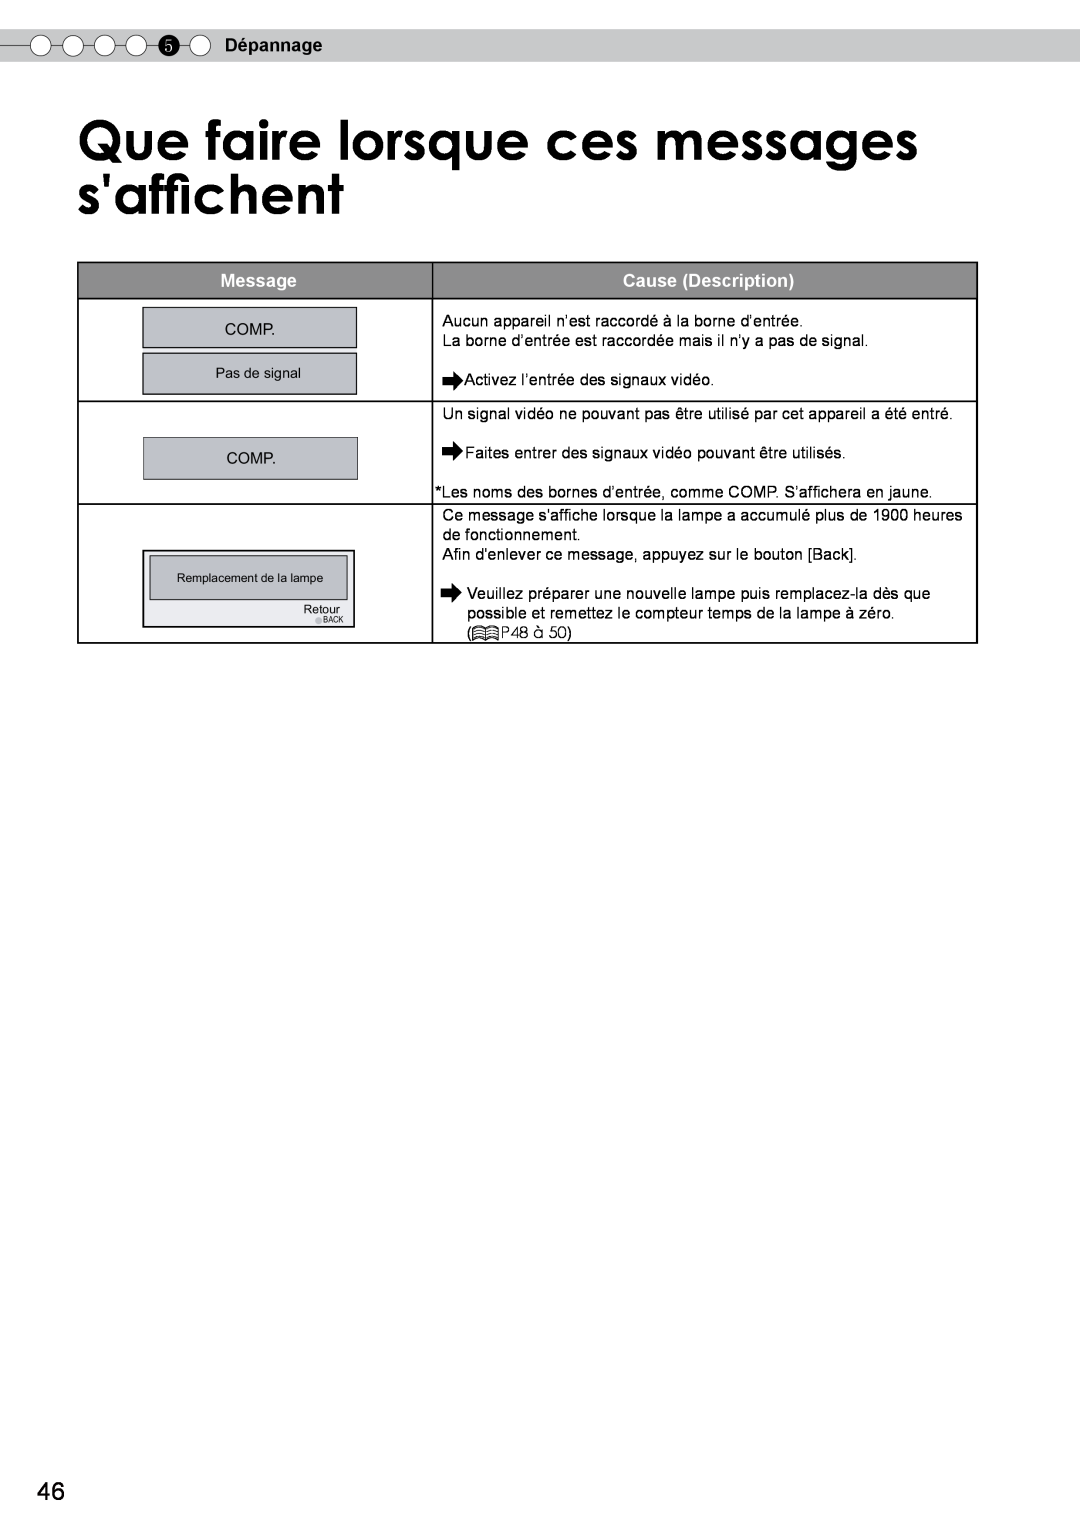 JVC DLA-RS10 manual Que faire lorsque ces messages saffichent, 5 Dépannage, Message, Cause Description 